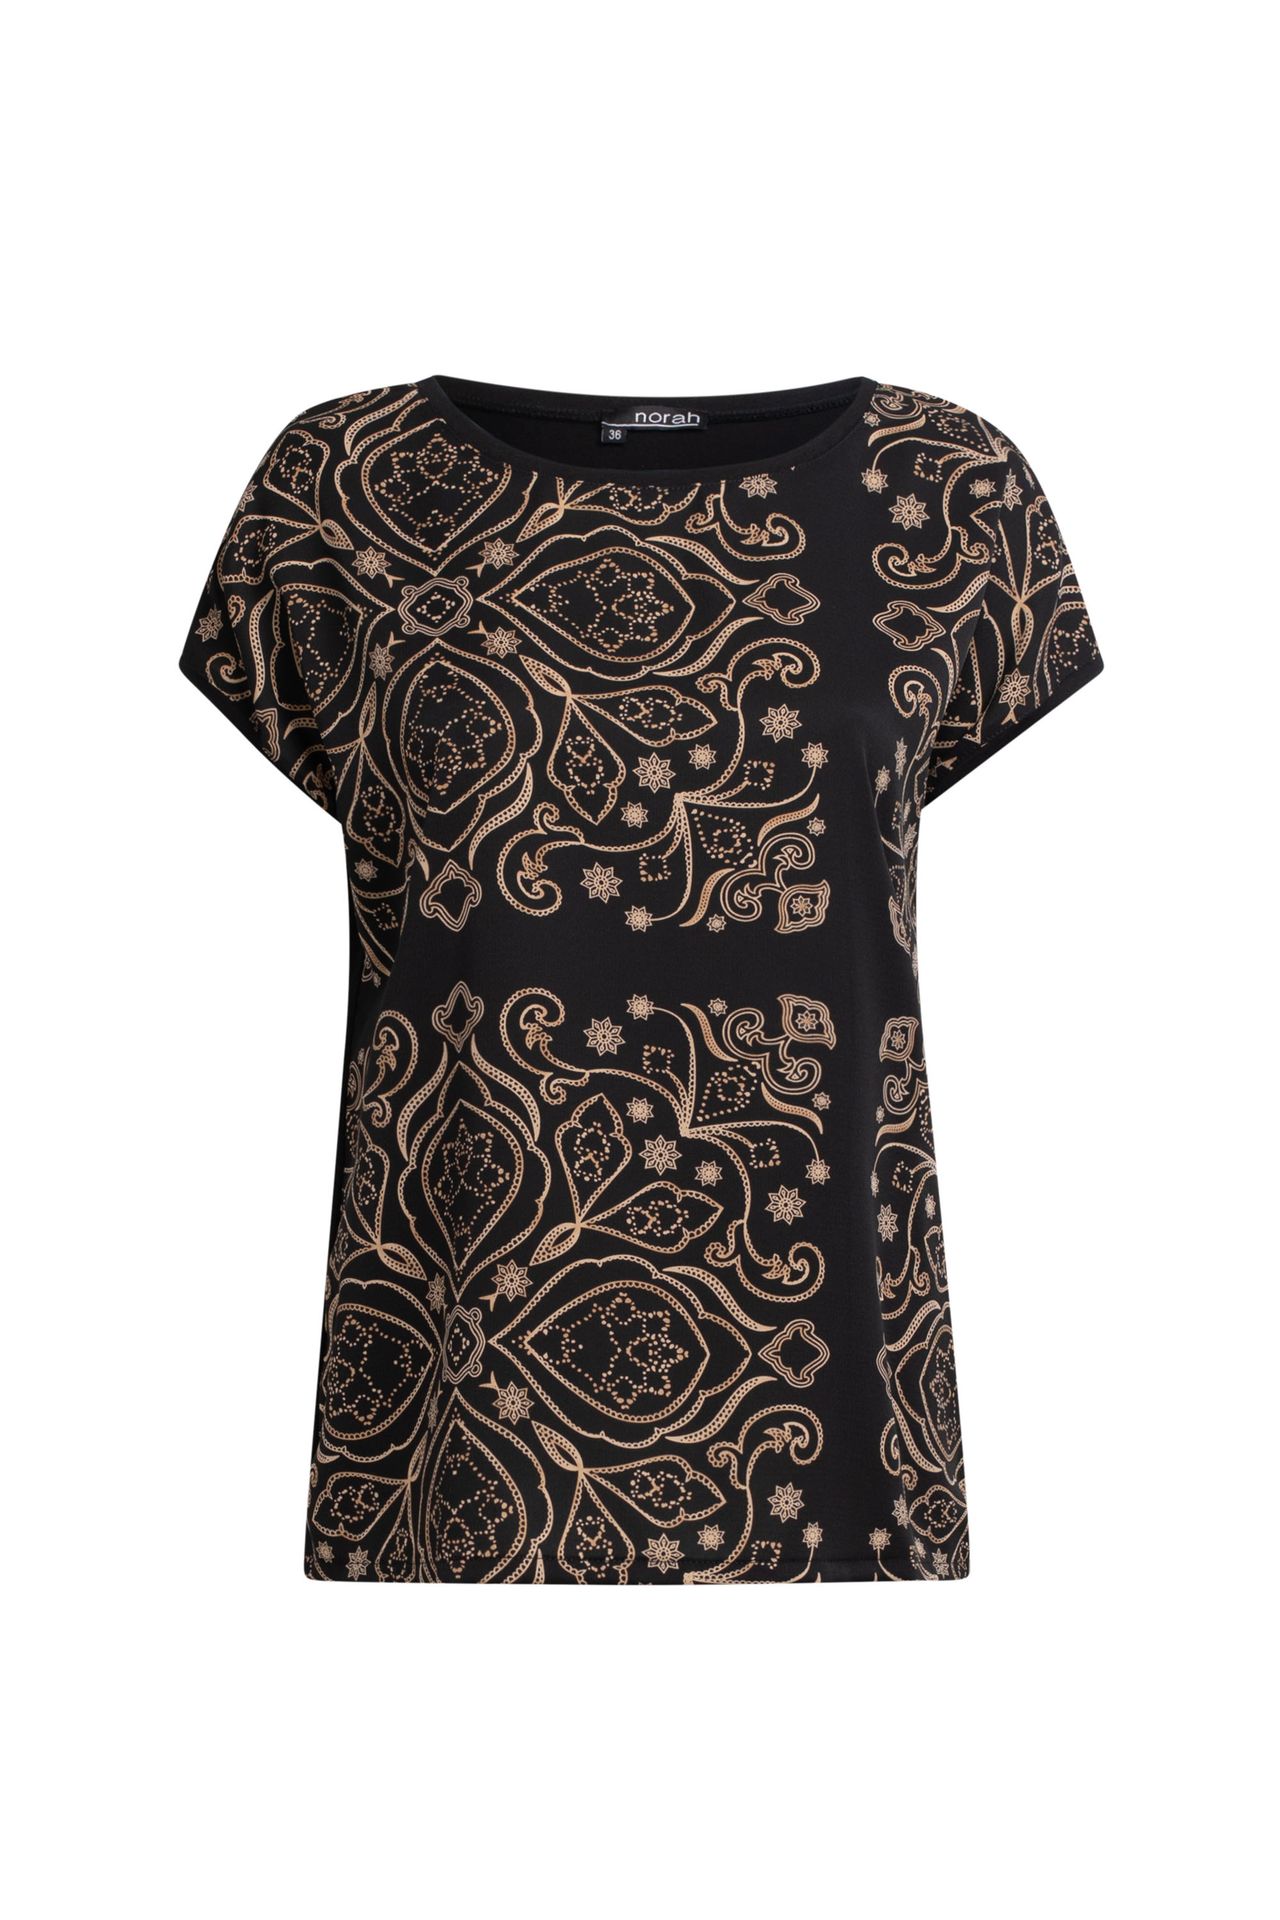 Norah Zwart shirt met gouden print black multicolor 211237-020